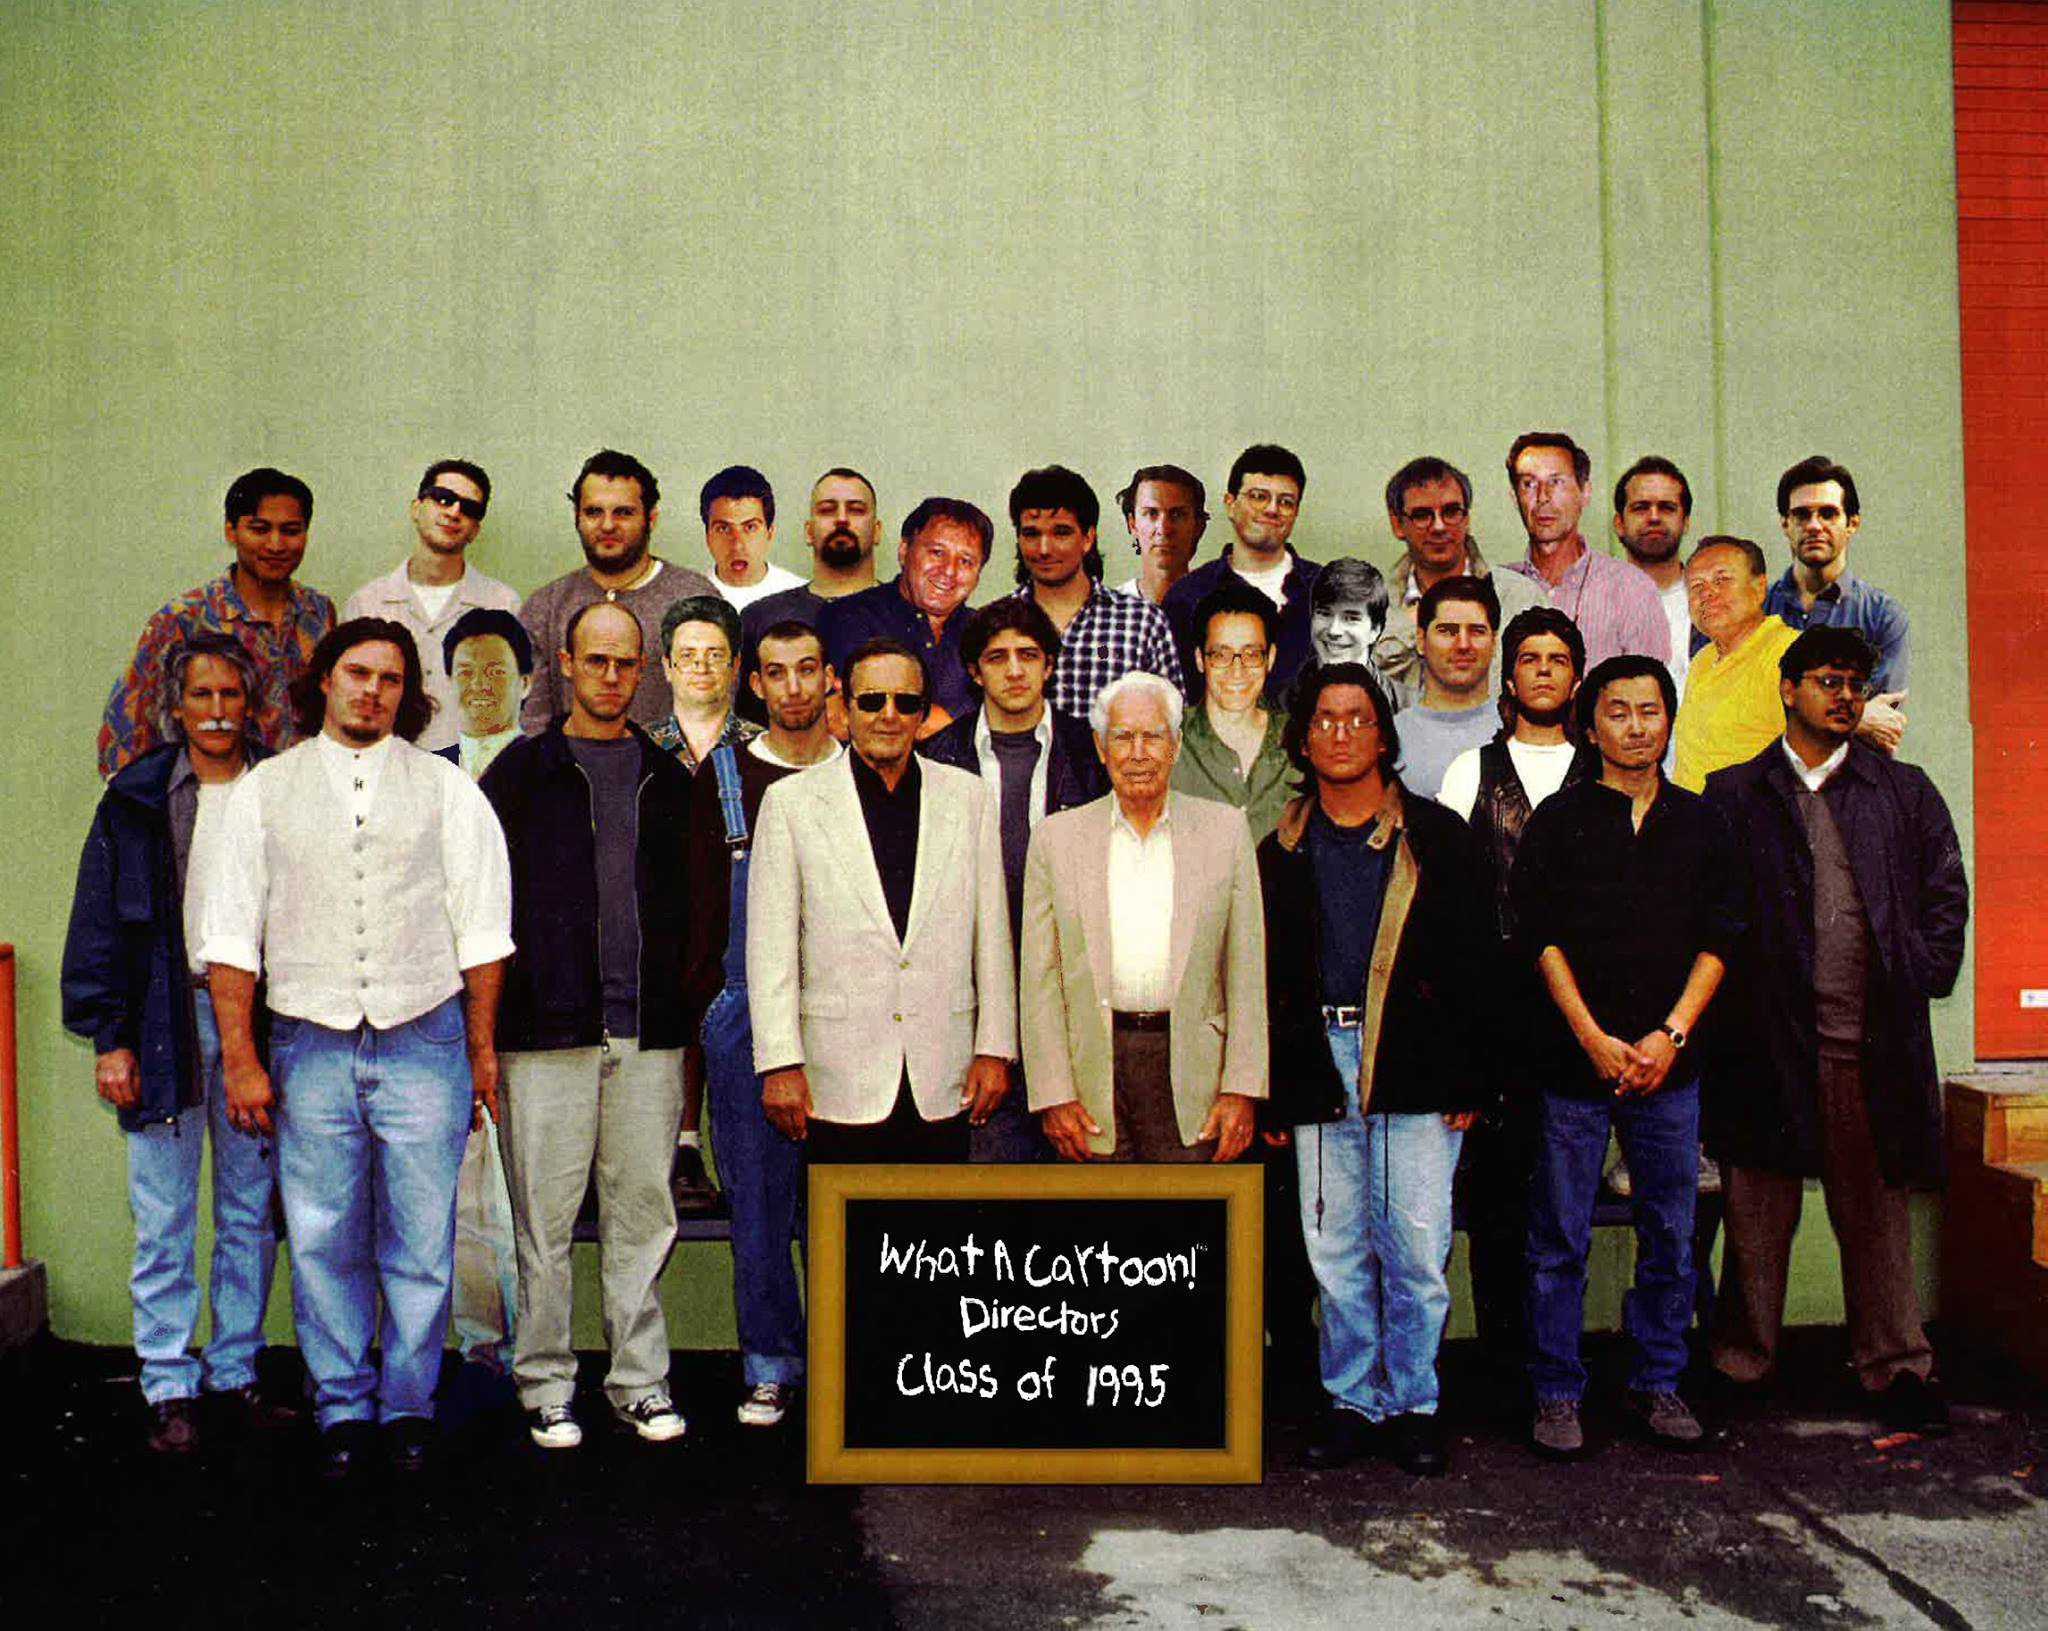 WHAT A CARTOON! CLASS OF 1995 — Van Partible